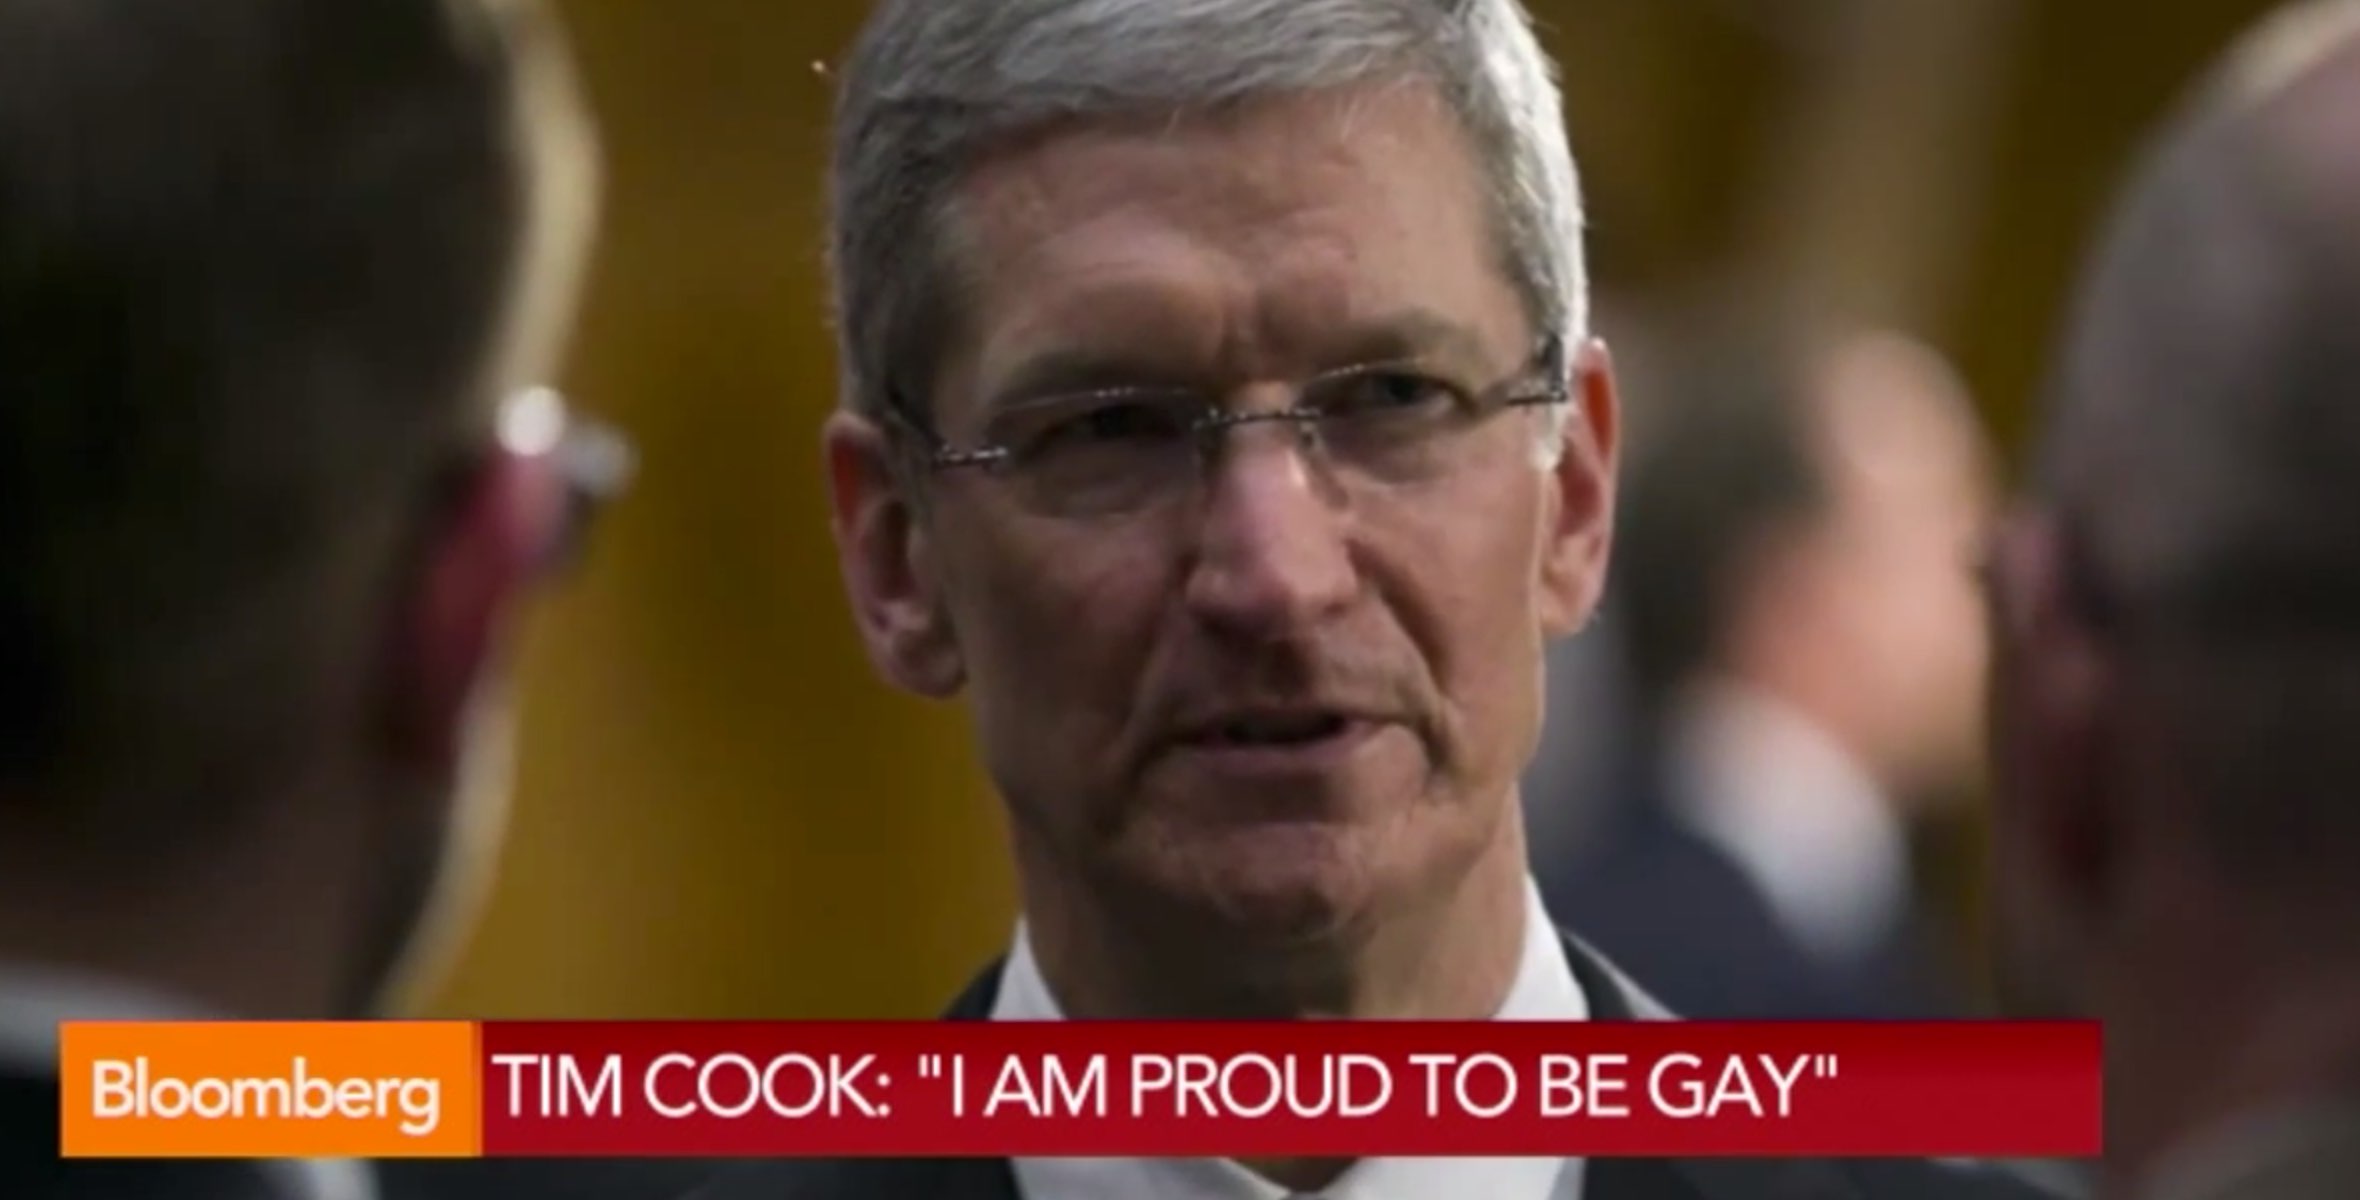 Offiziell: Apple CEO Tim Cook ist schwul - und stolz darauf! 3